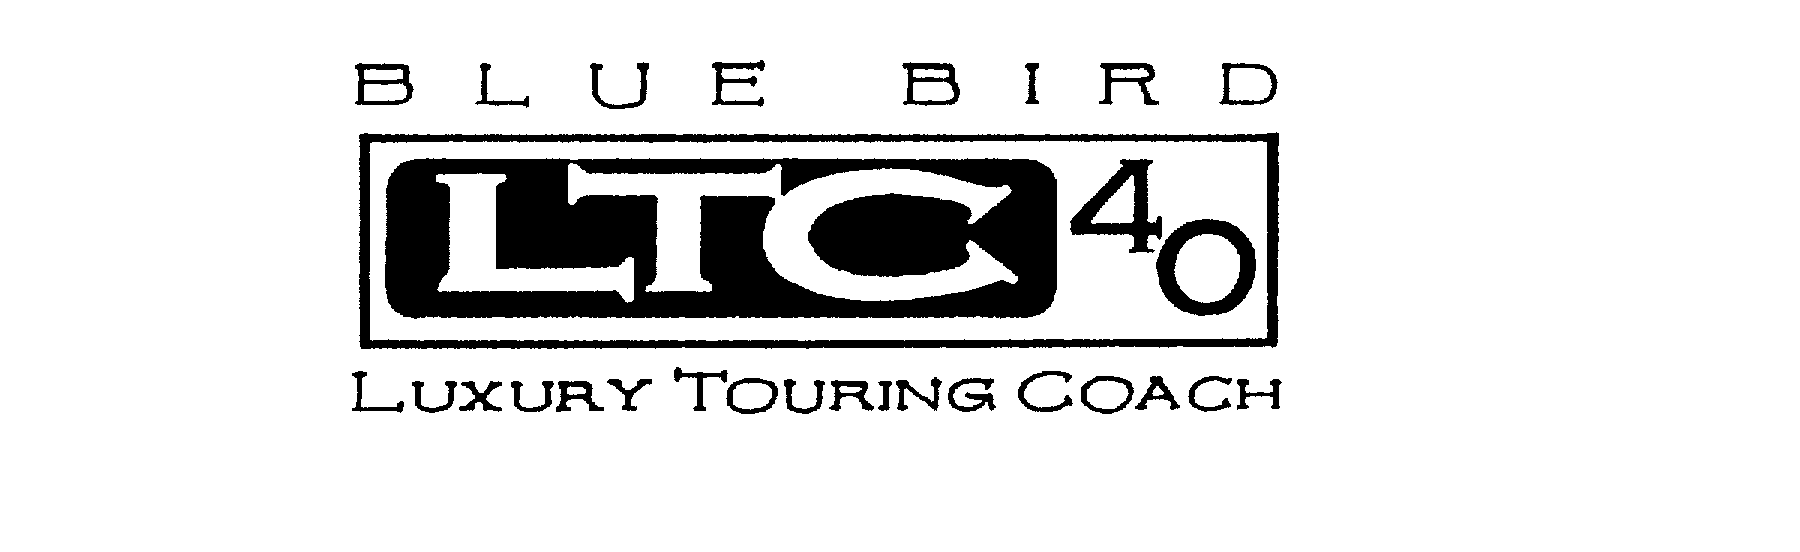  BLUE BIRD LTC 40 LUXURY TOURING COACH